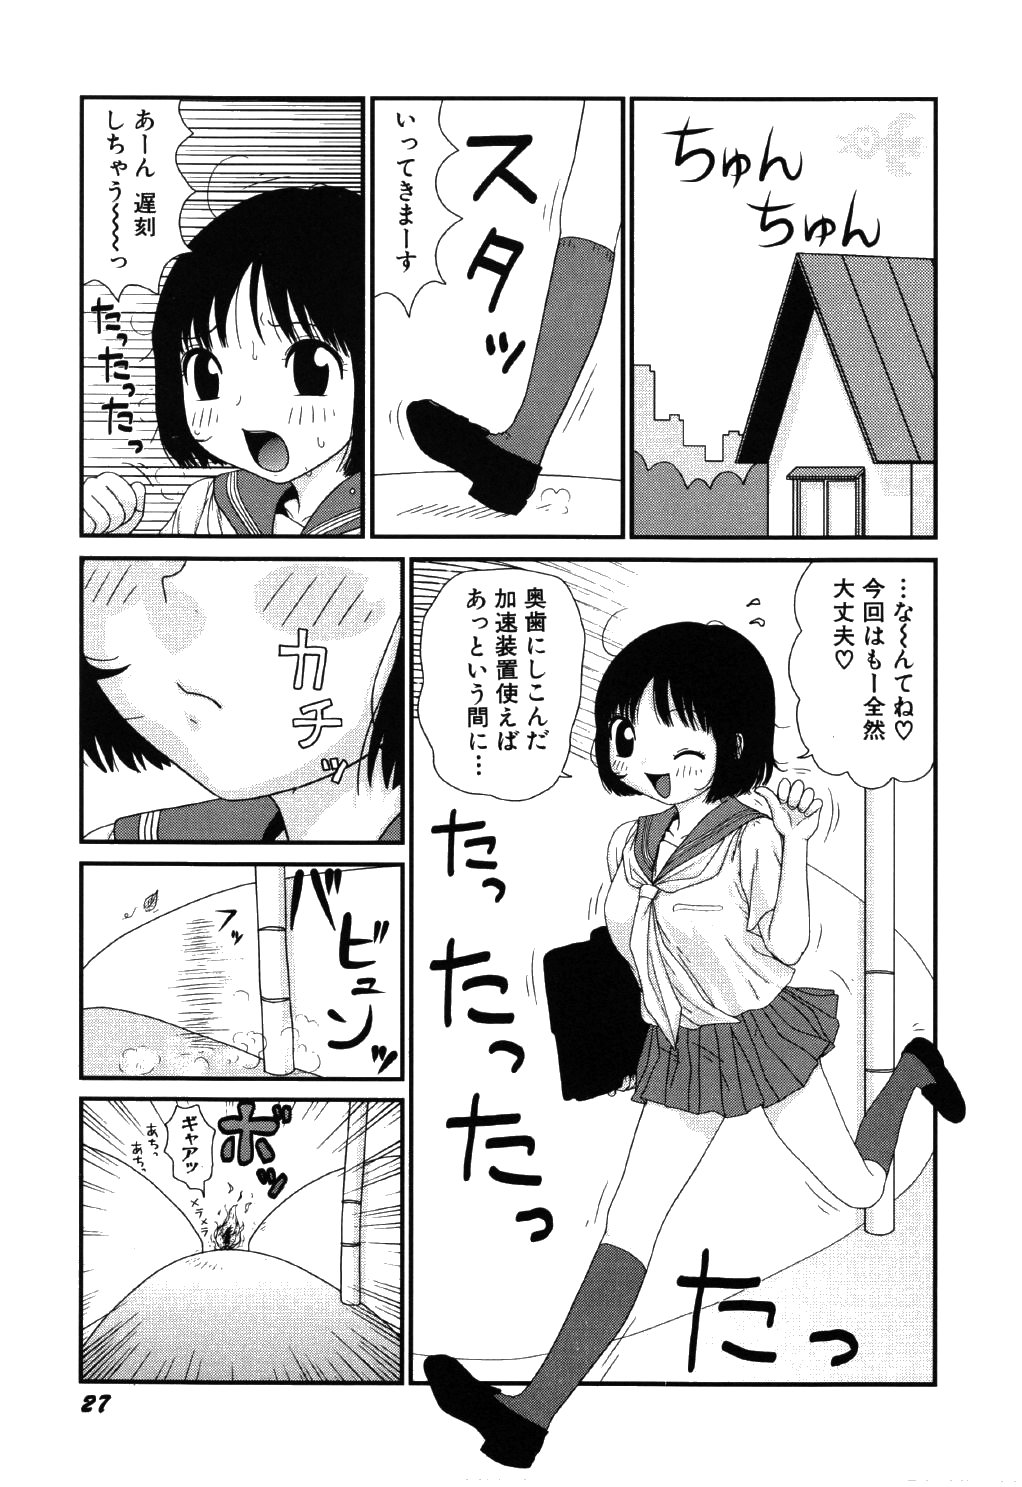 [Machino Henmaru] little yumiko chan page 31 full